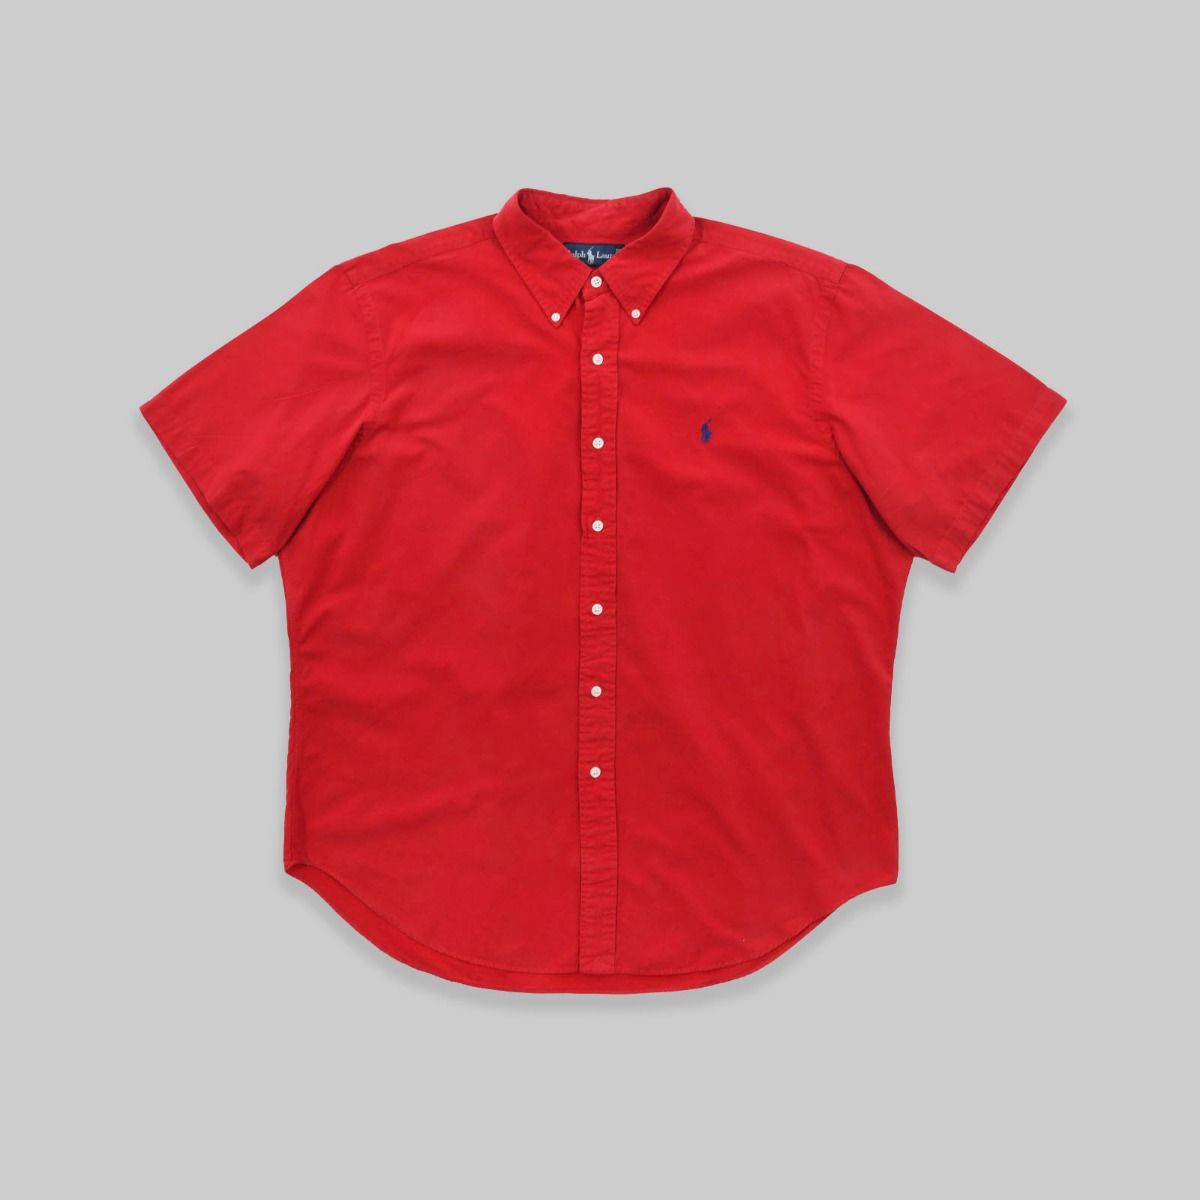 Ralph Lauren Short Sleeve Shirt